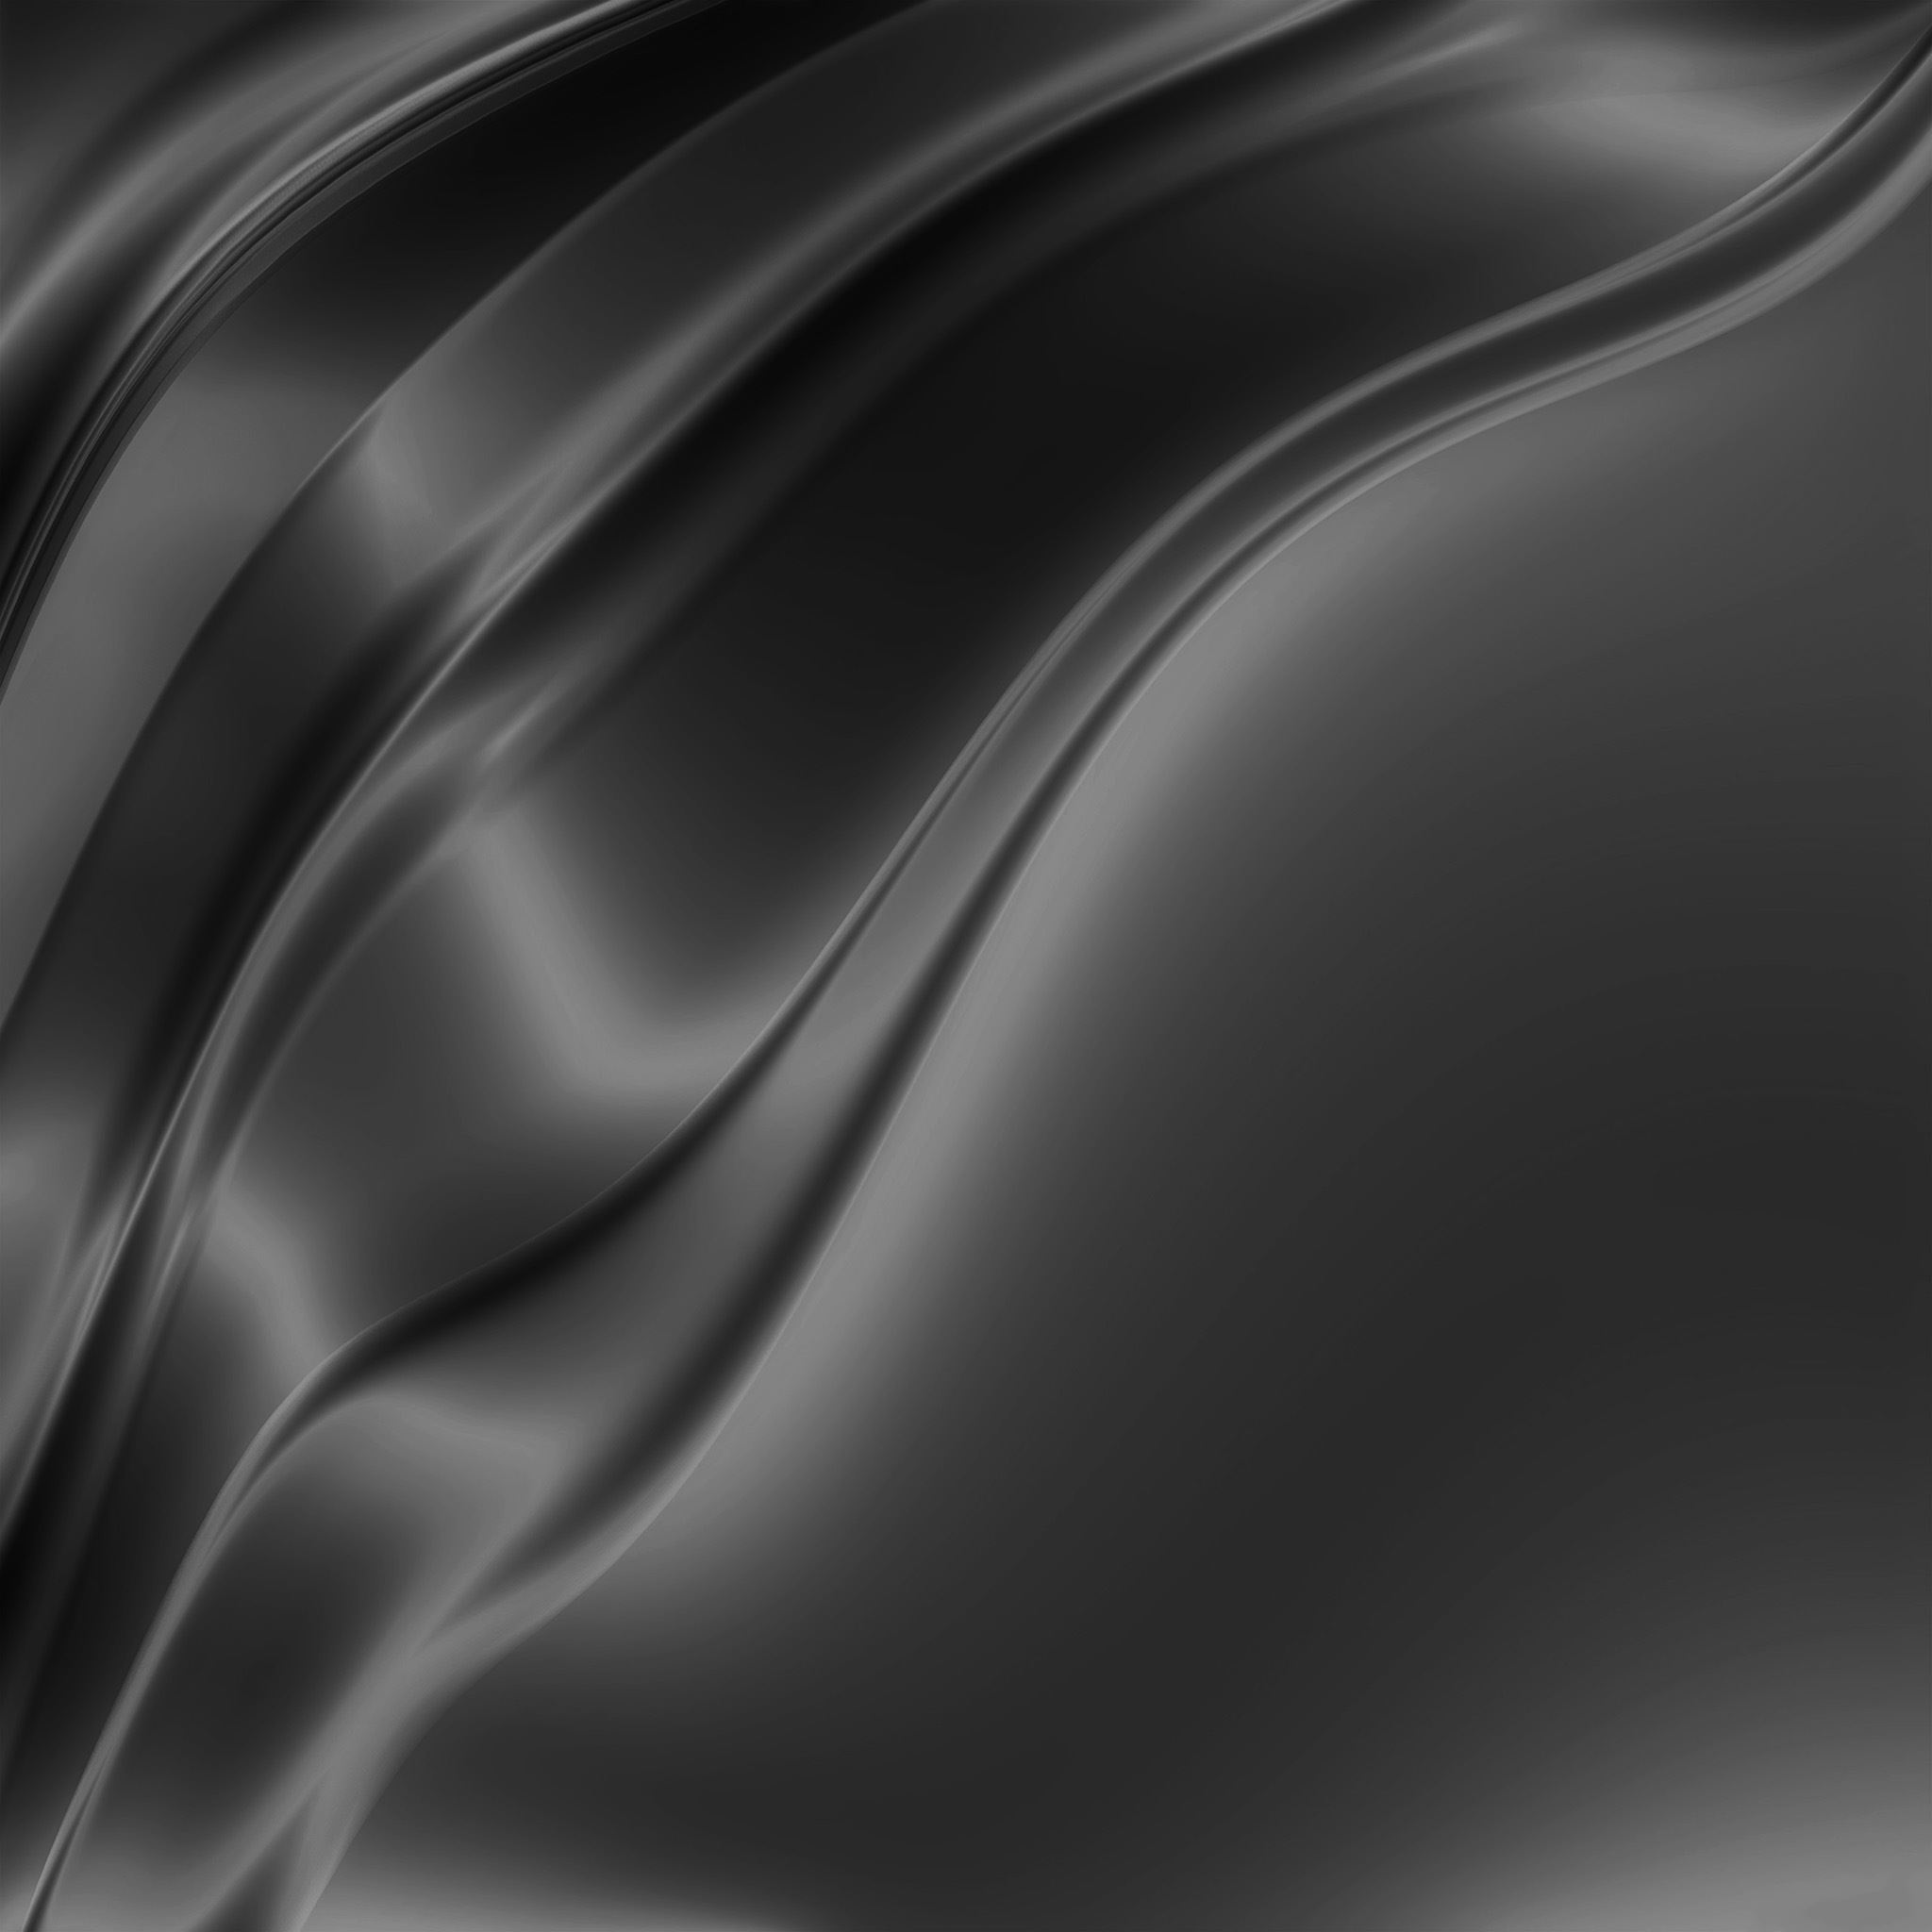 Texture Slik Soft Bw Dark Galaxy Pattern iPad Air Wallpaper Free Download